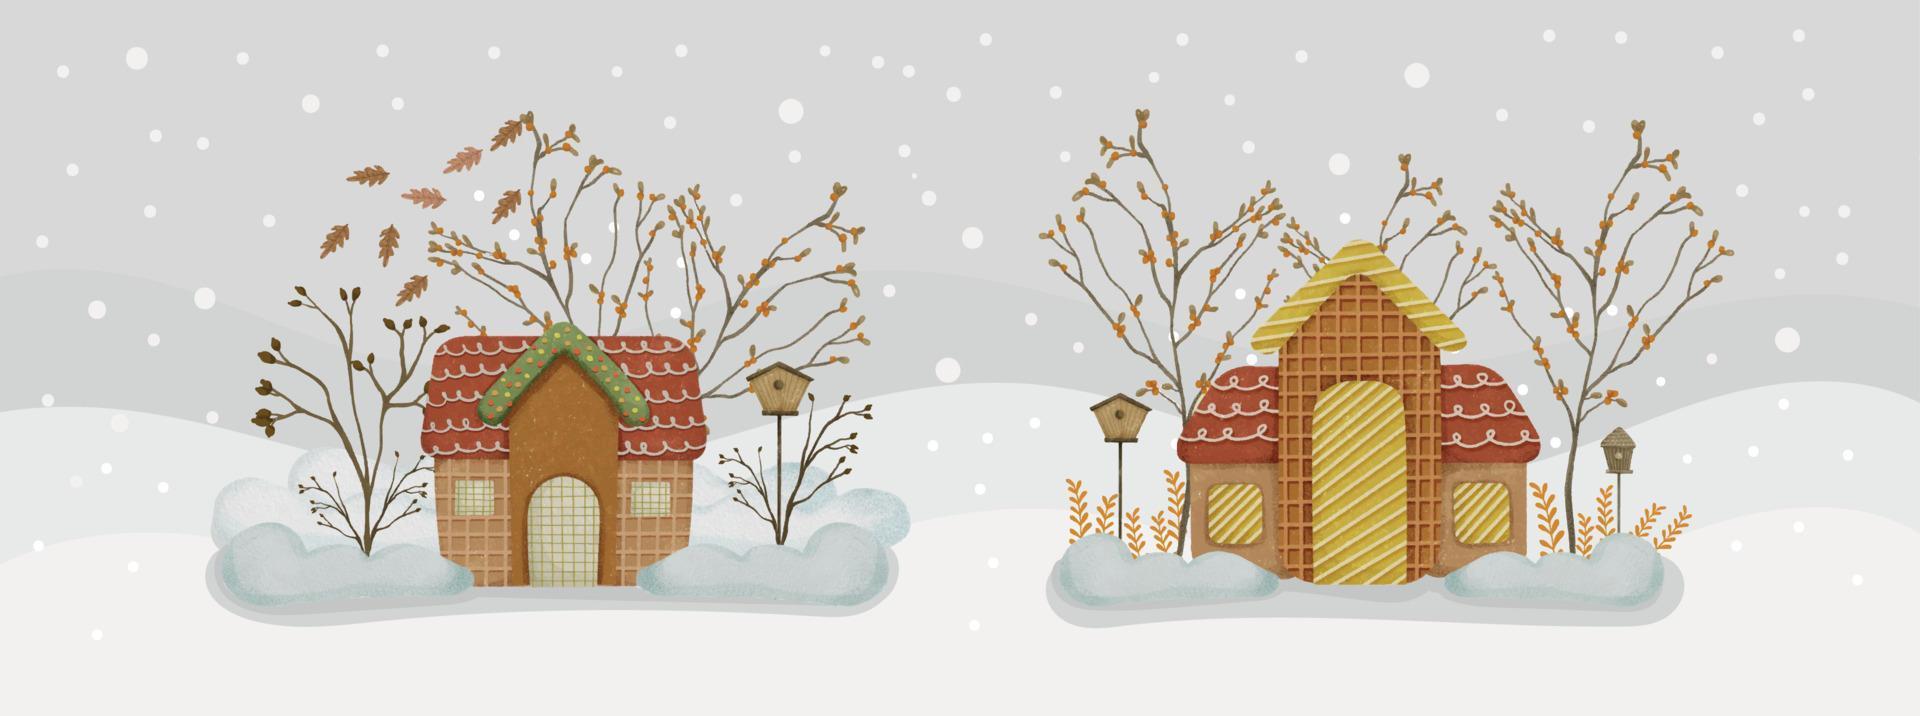 waterverf peperkoek huizen samenstelling met berg visie terwijl sneeuwen Kerstmis banier sjabloon 01 vector